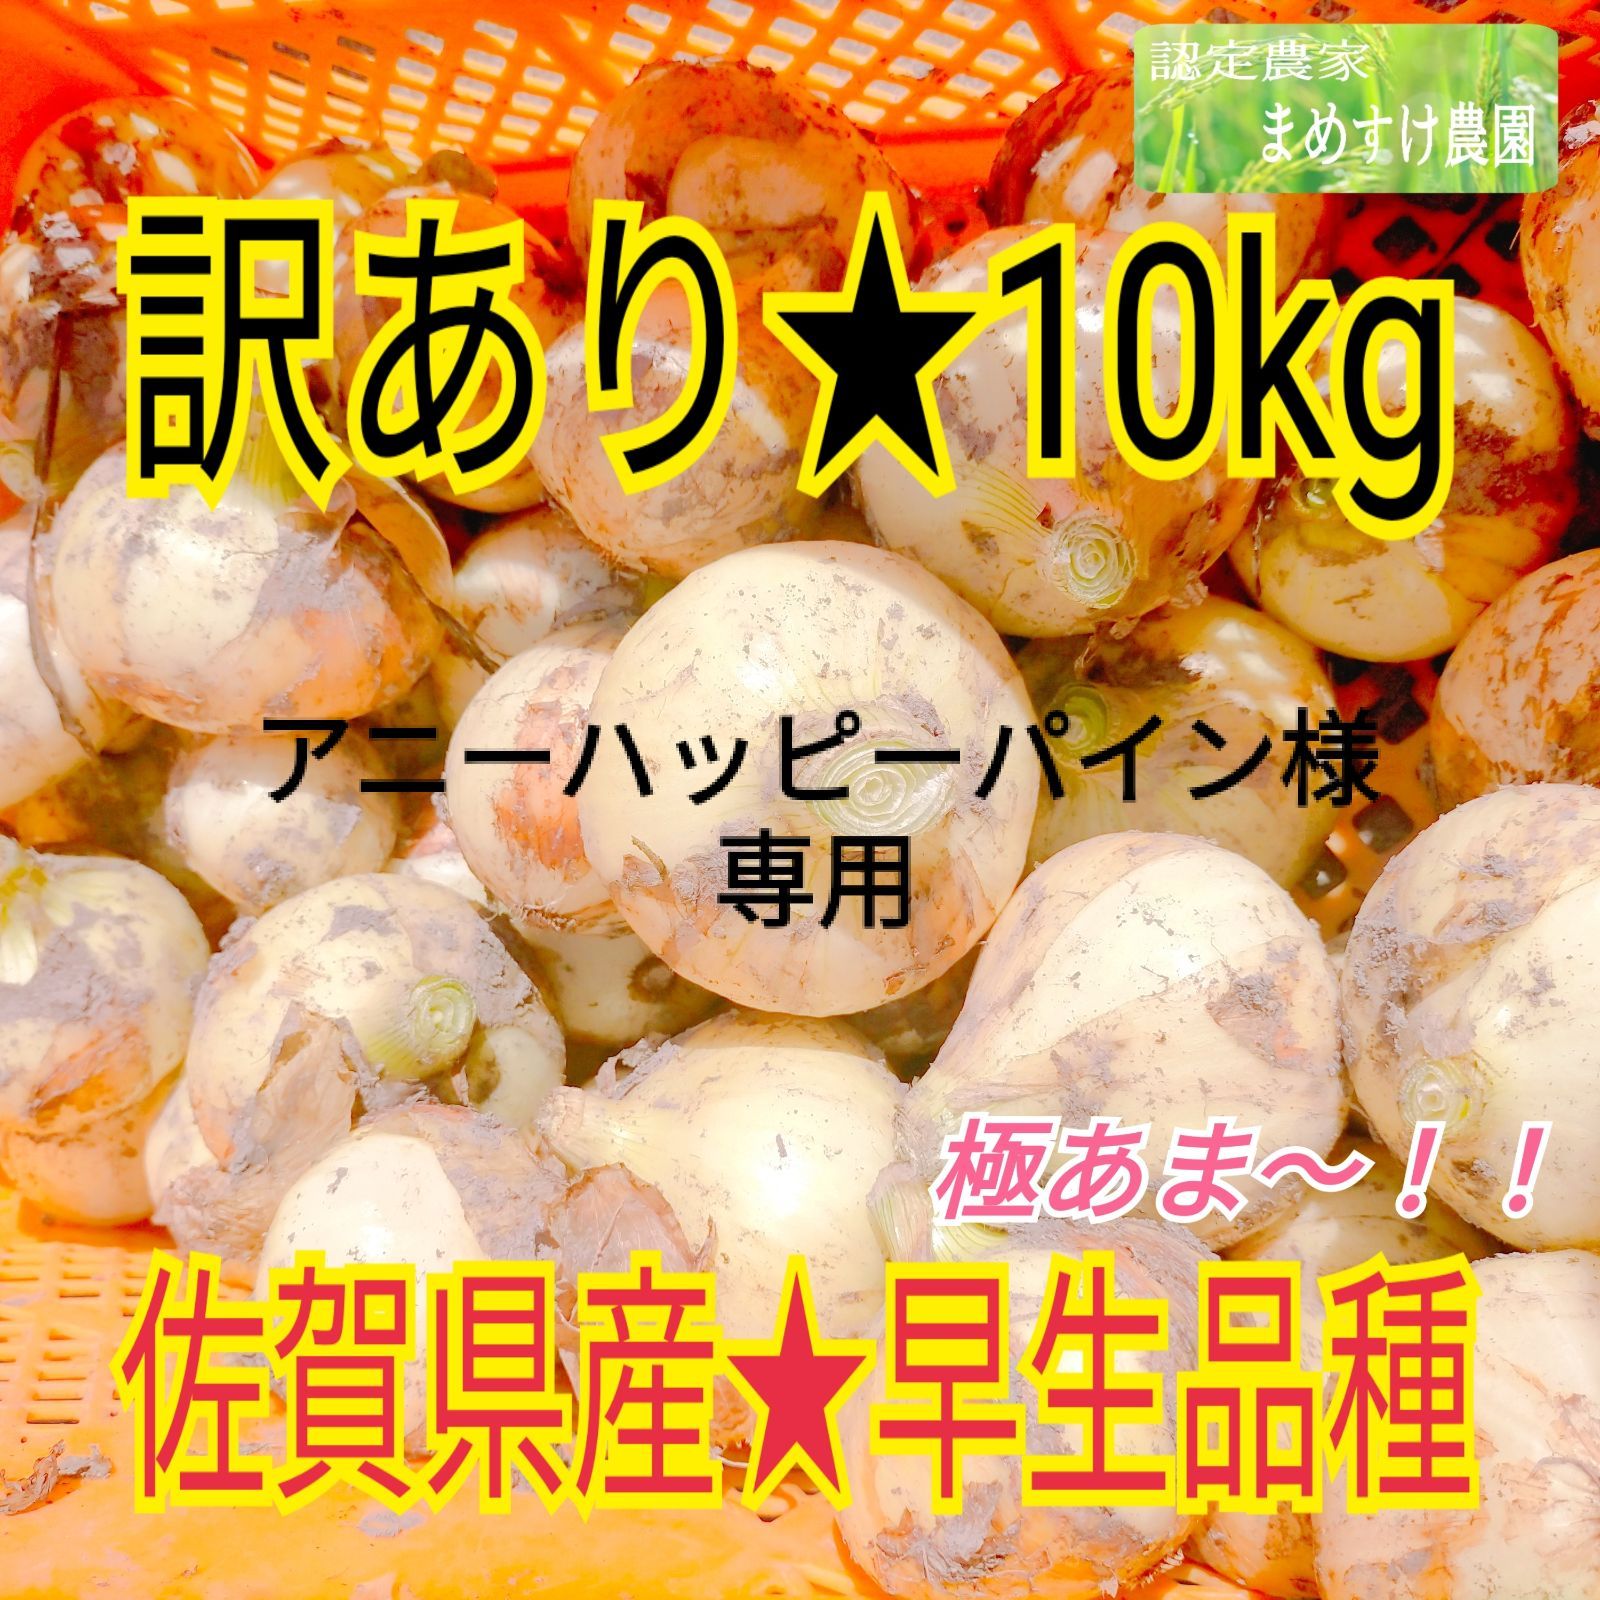 アニーハッピーパイン様専用 佐賀県産 早生品種 玉ねぎ 訳あり 10kg